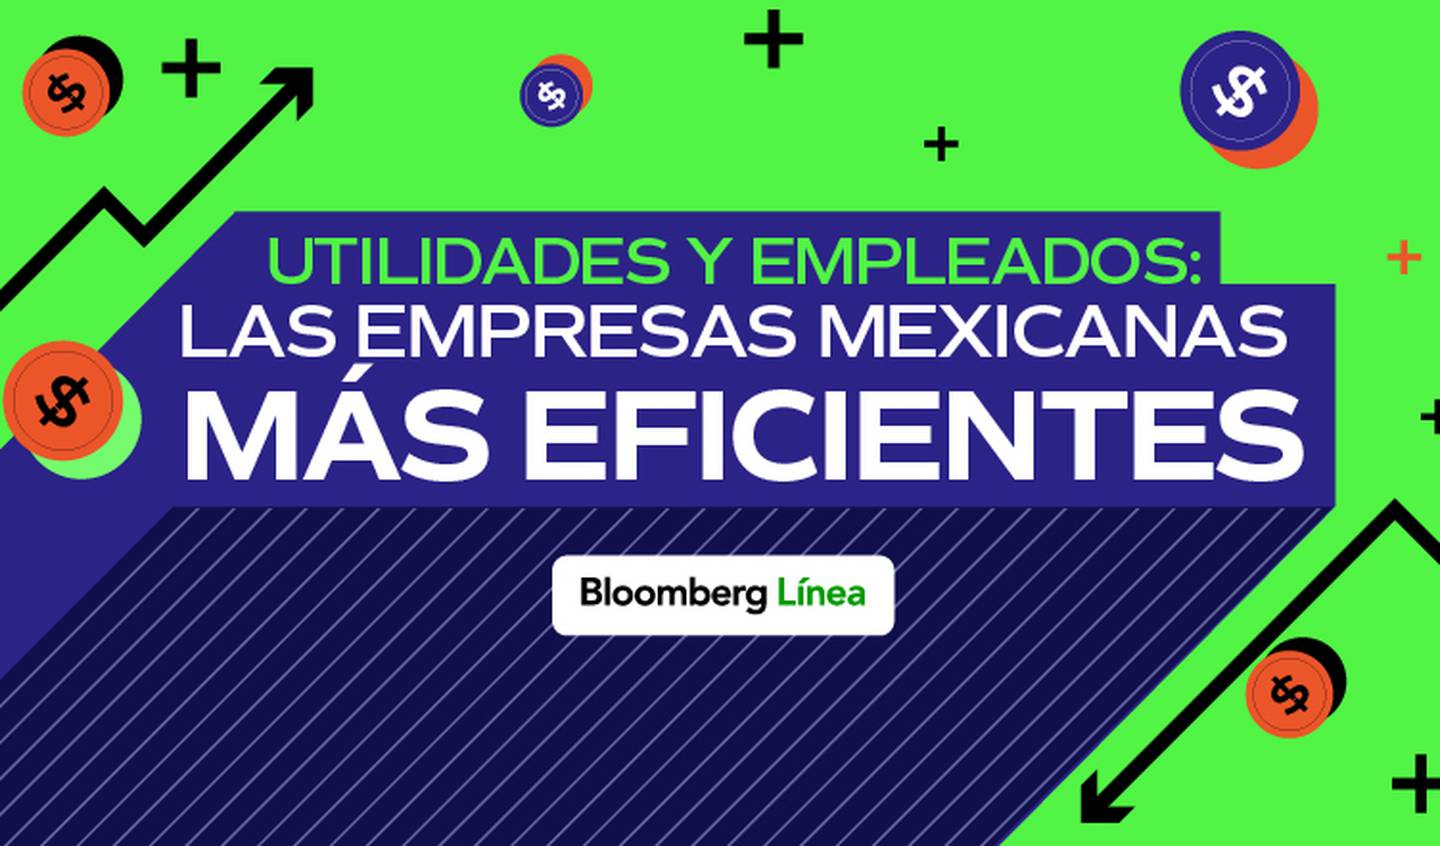 Tres empresas mexicanas destacan por generar mayor utilidad por empleado, dos de ellas forman parte del sector aeroportuario y una es una fibra industrial